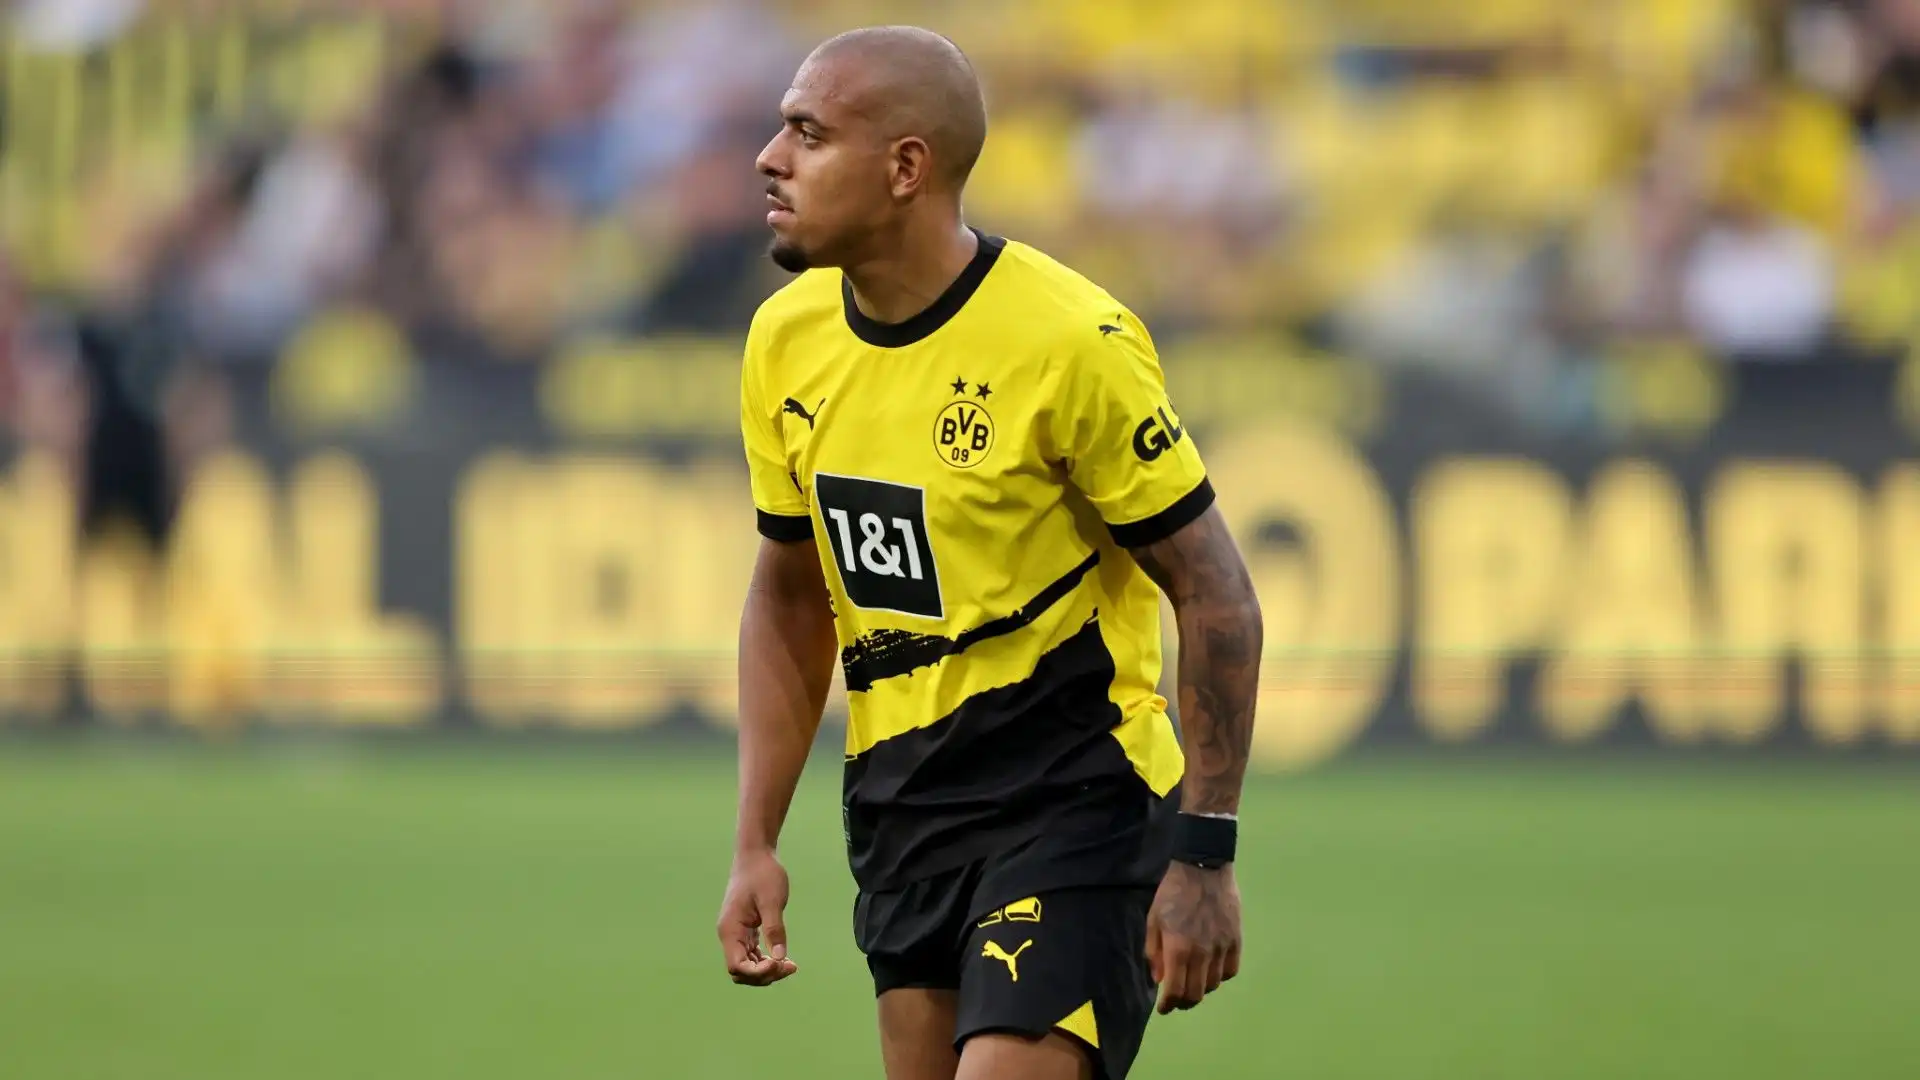 Nonostante abbia un contratto con il Borussia Dortmund fino al 2026, l'attaccante potrebbe già trasferirsi